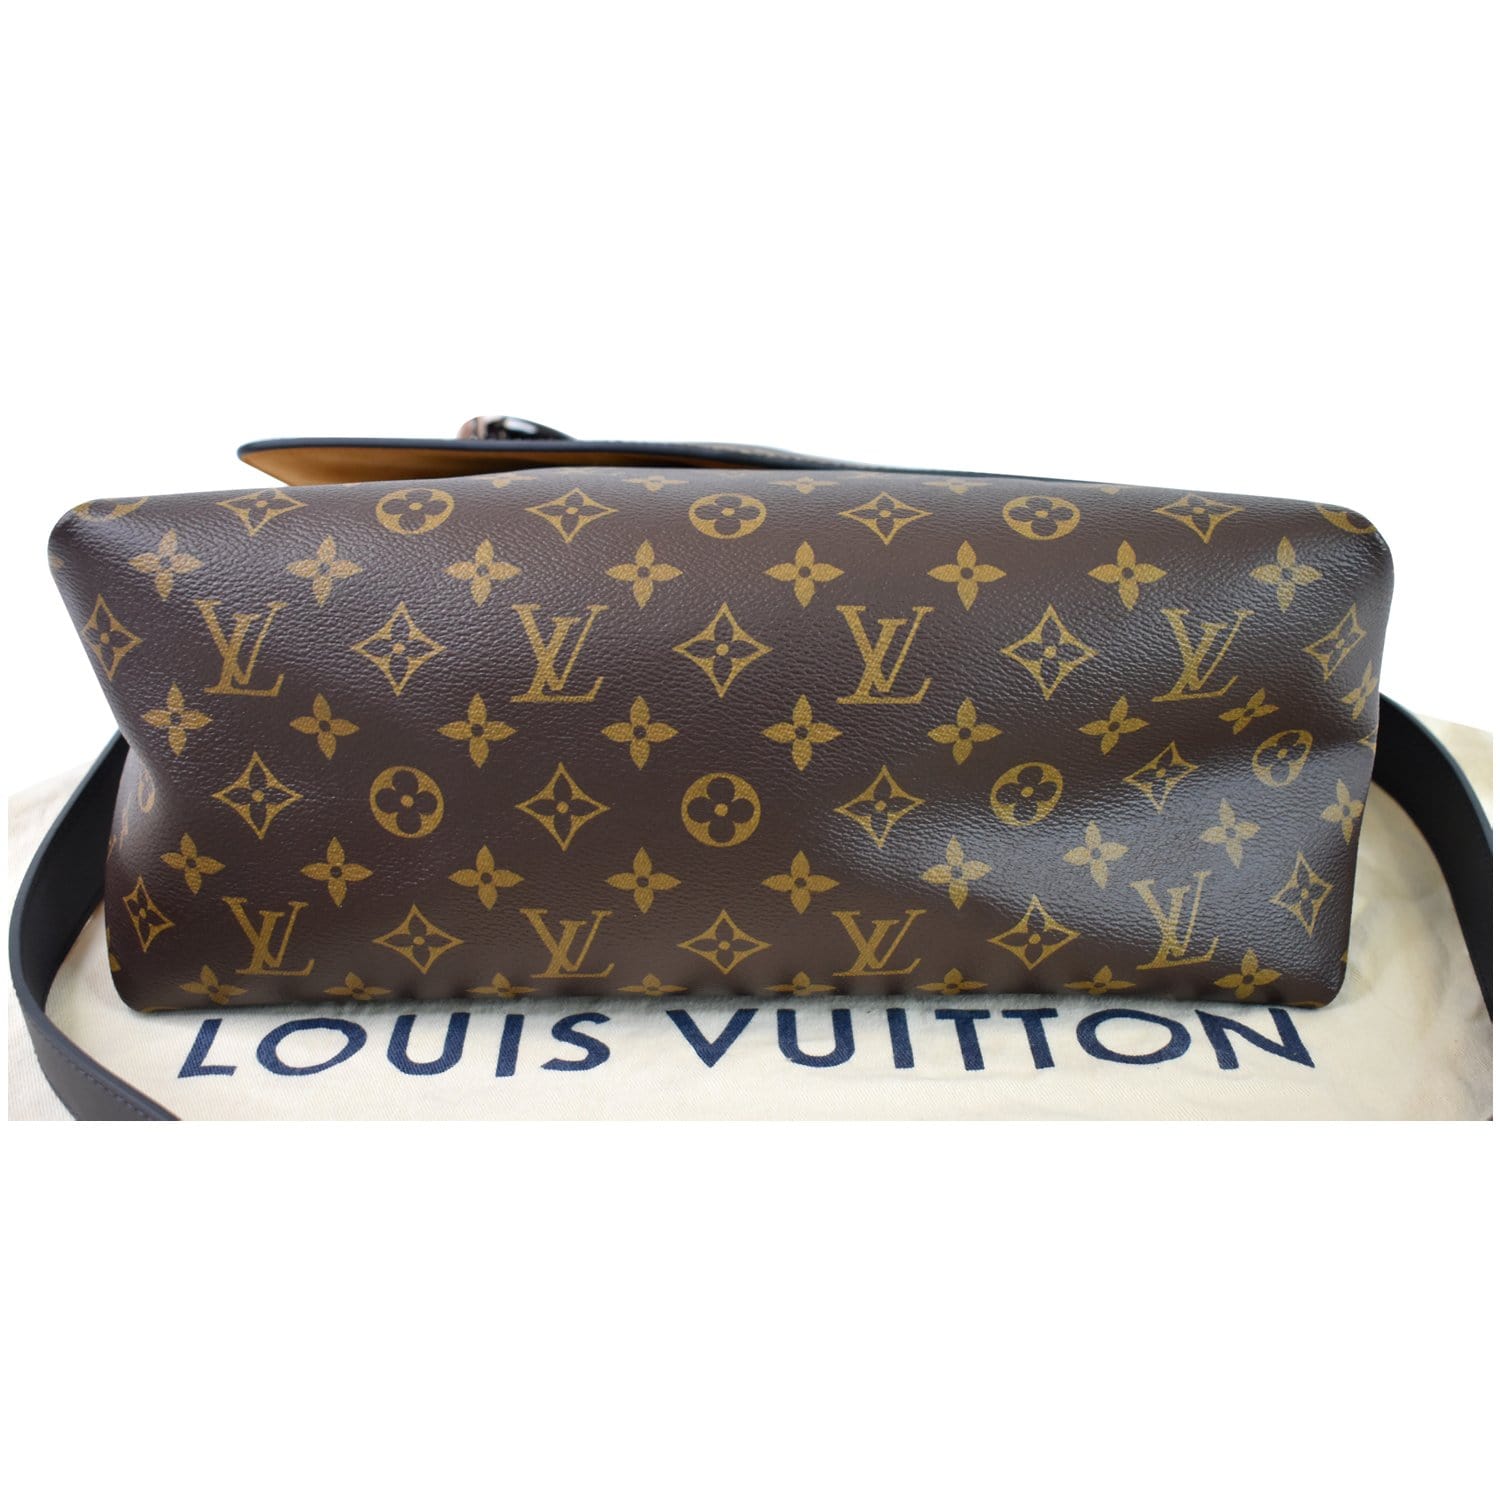 Beaubourg cloth handbag Louis Vuitton Brown in Cloth - 11457005